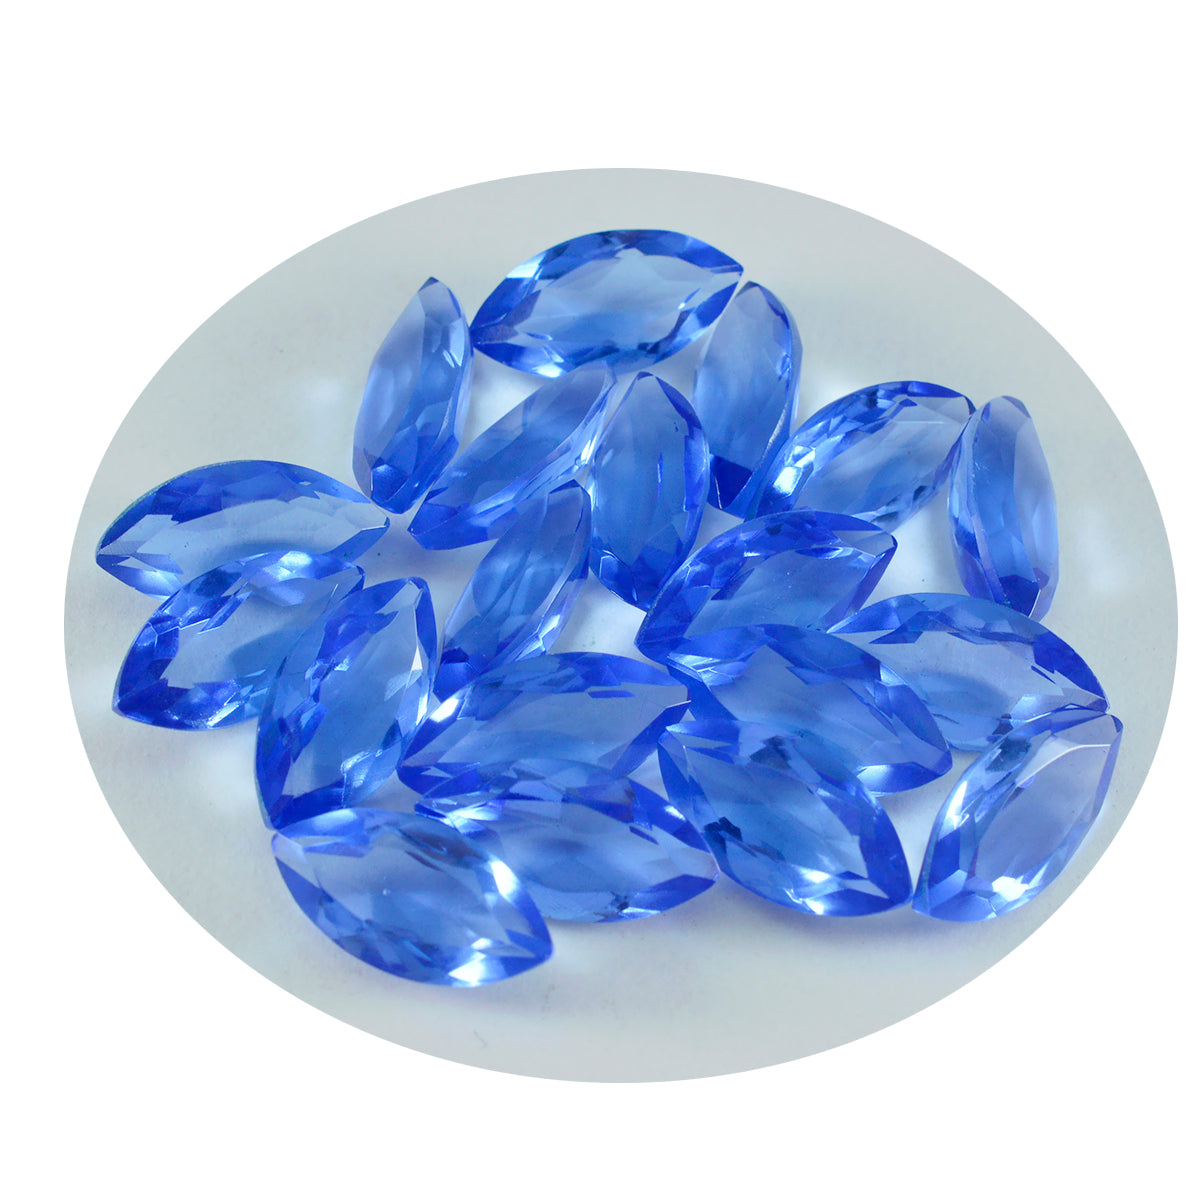 riyogems 1 шт. синий сапфир cz ограненный 5x10 мм форма маркиза превосходное качество свободный драгоценный камень